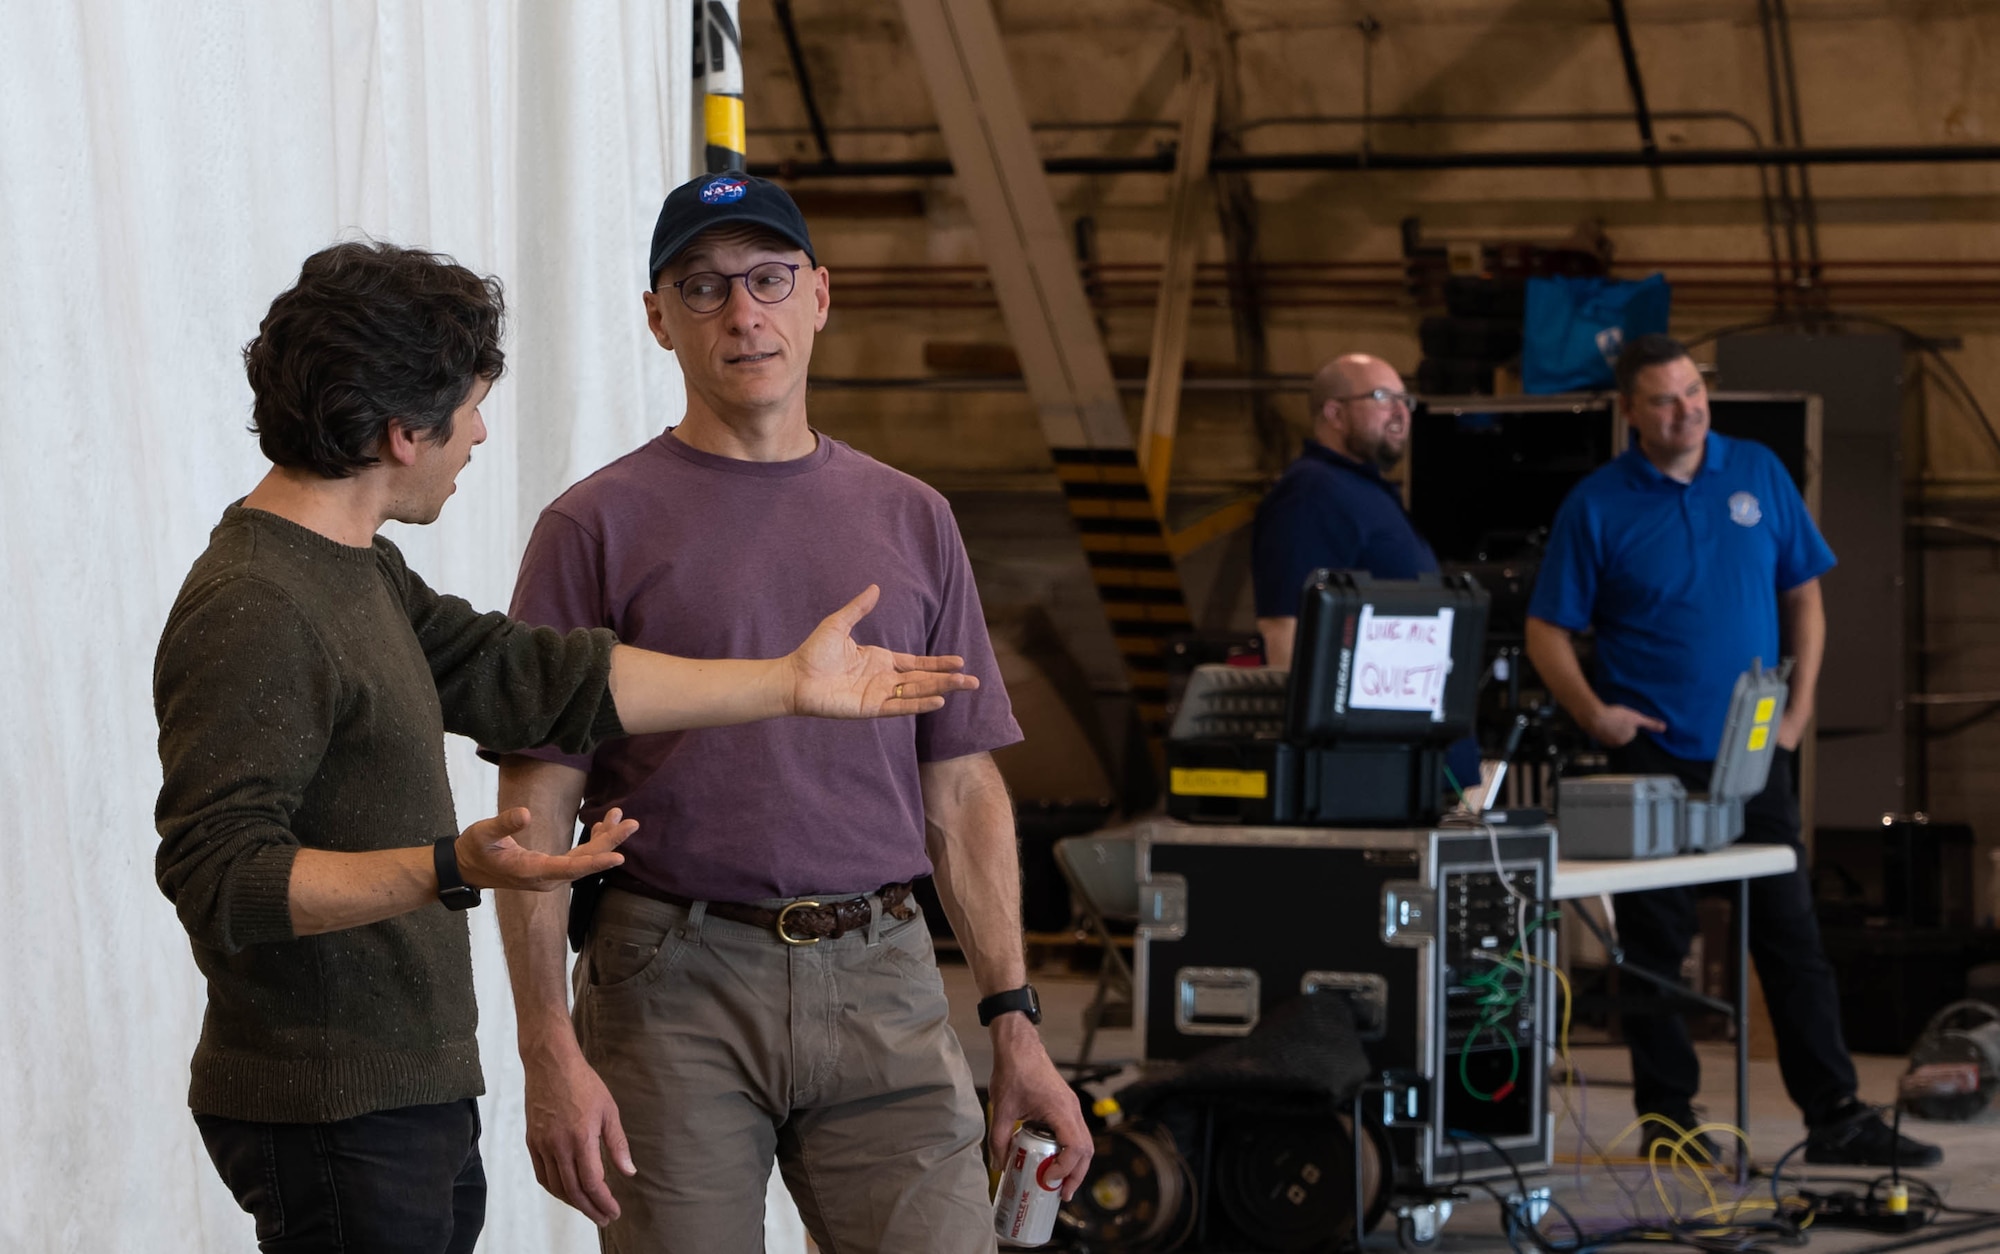 Two men discuss options in an aircraft hangar